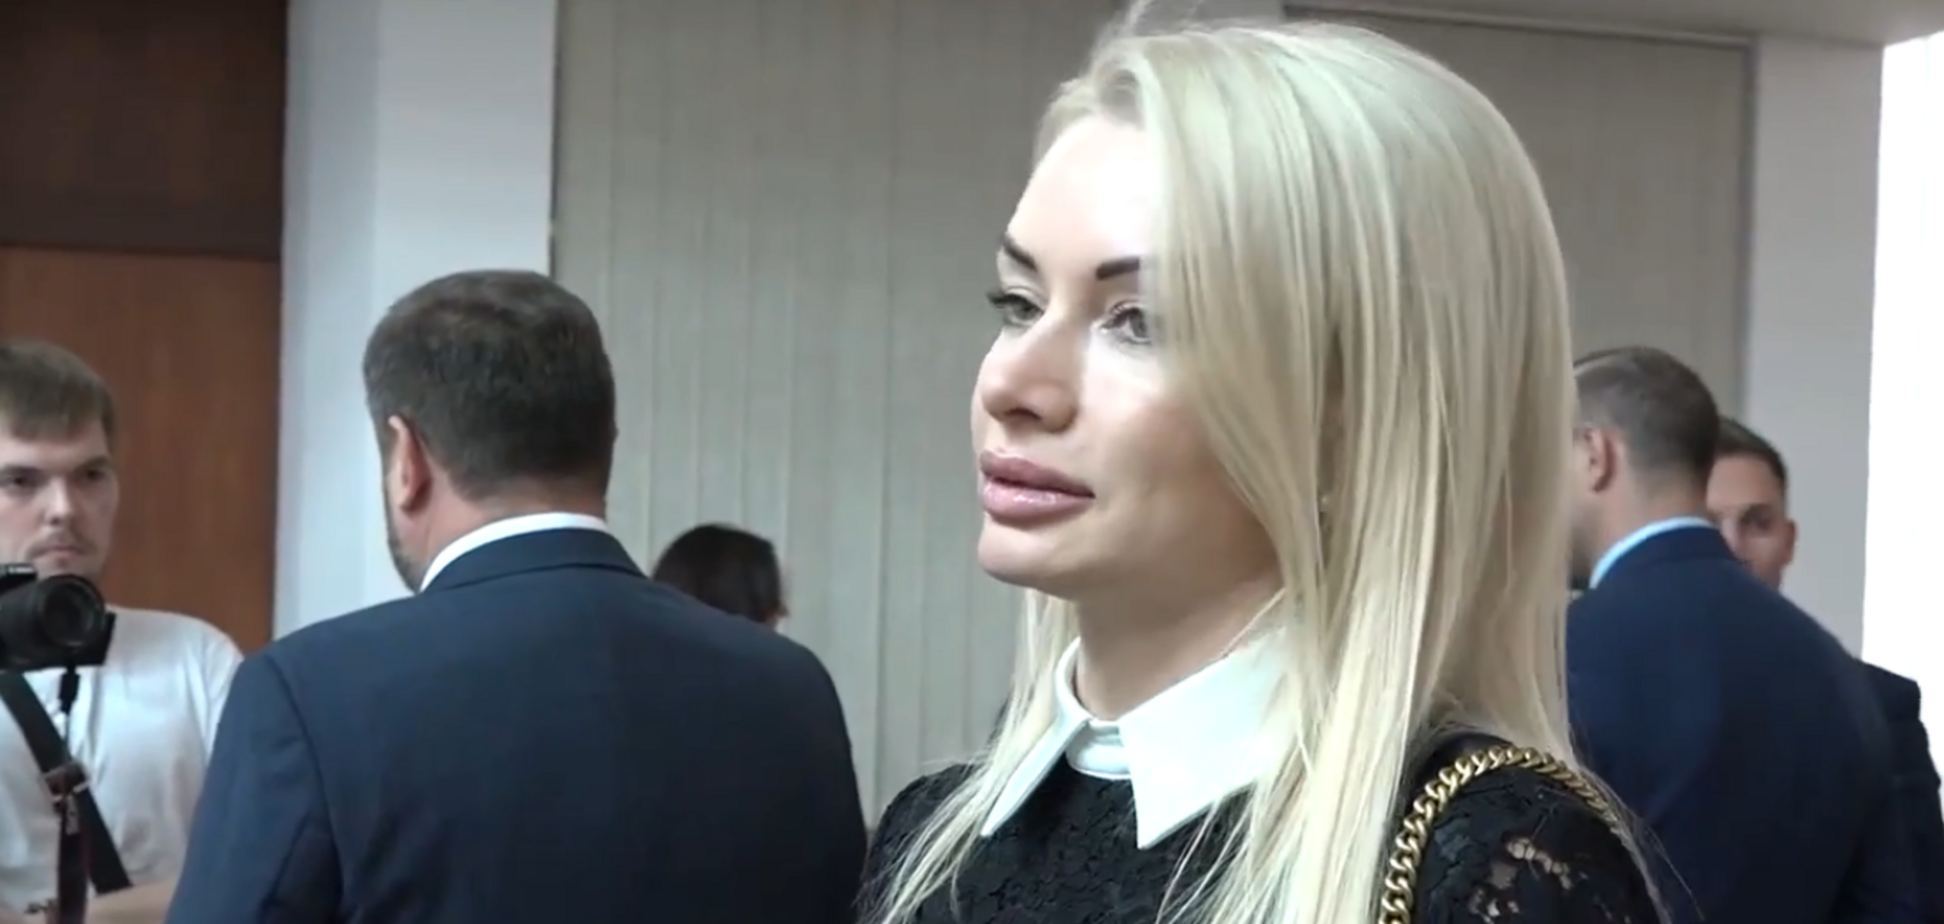 Ірина Аллахвердієва вважає розмову колег про неї фейком